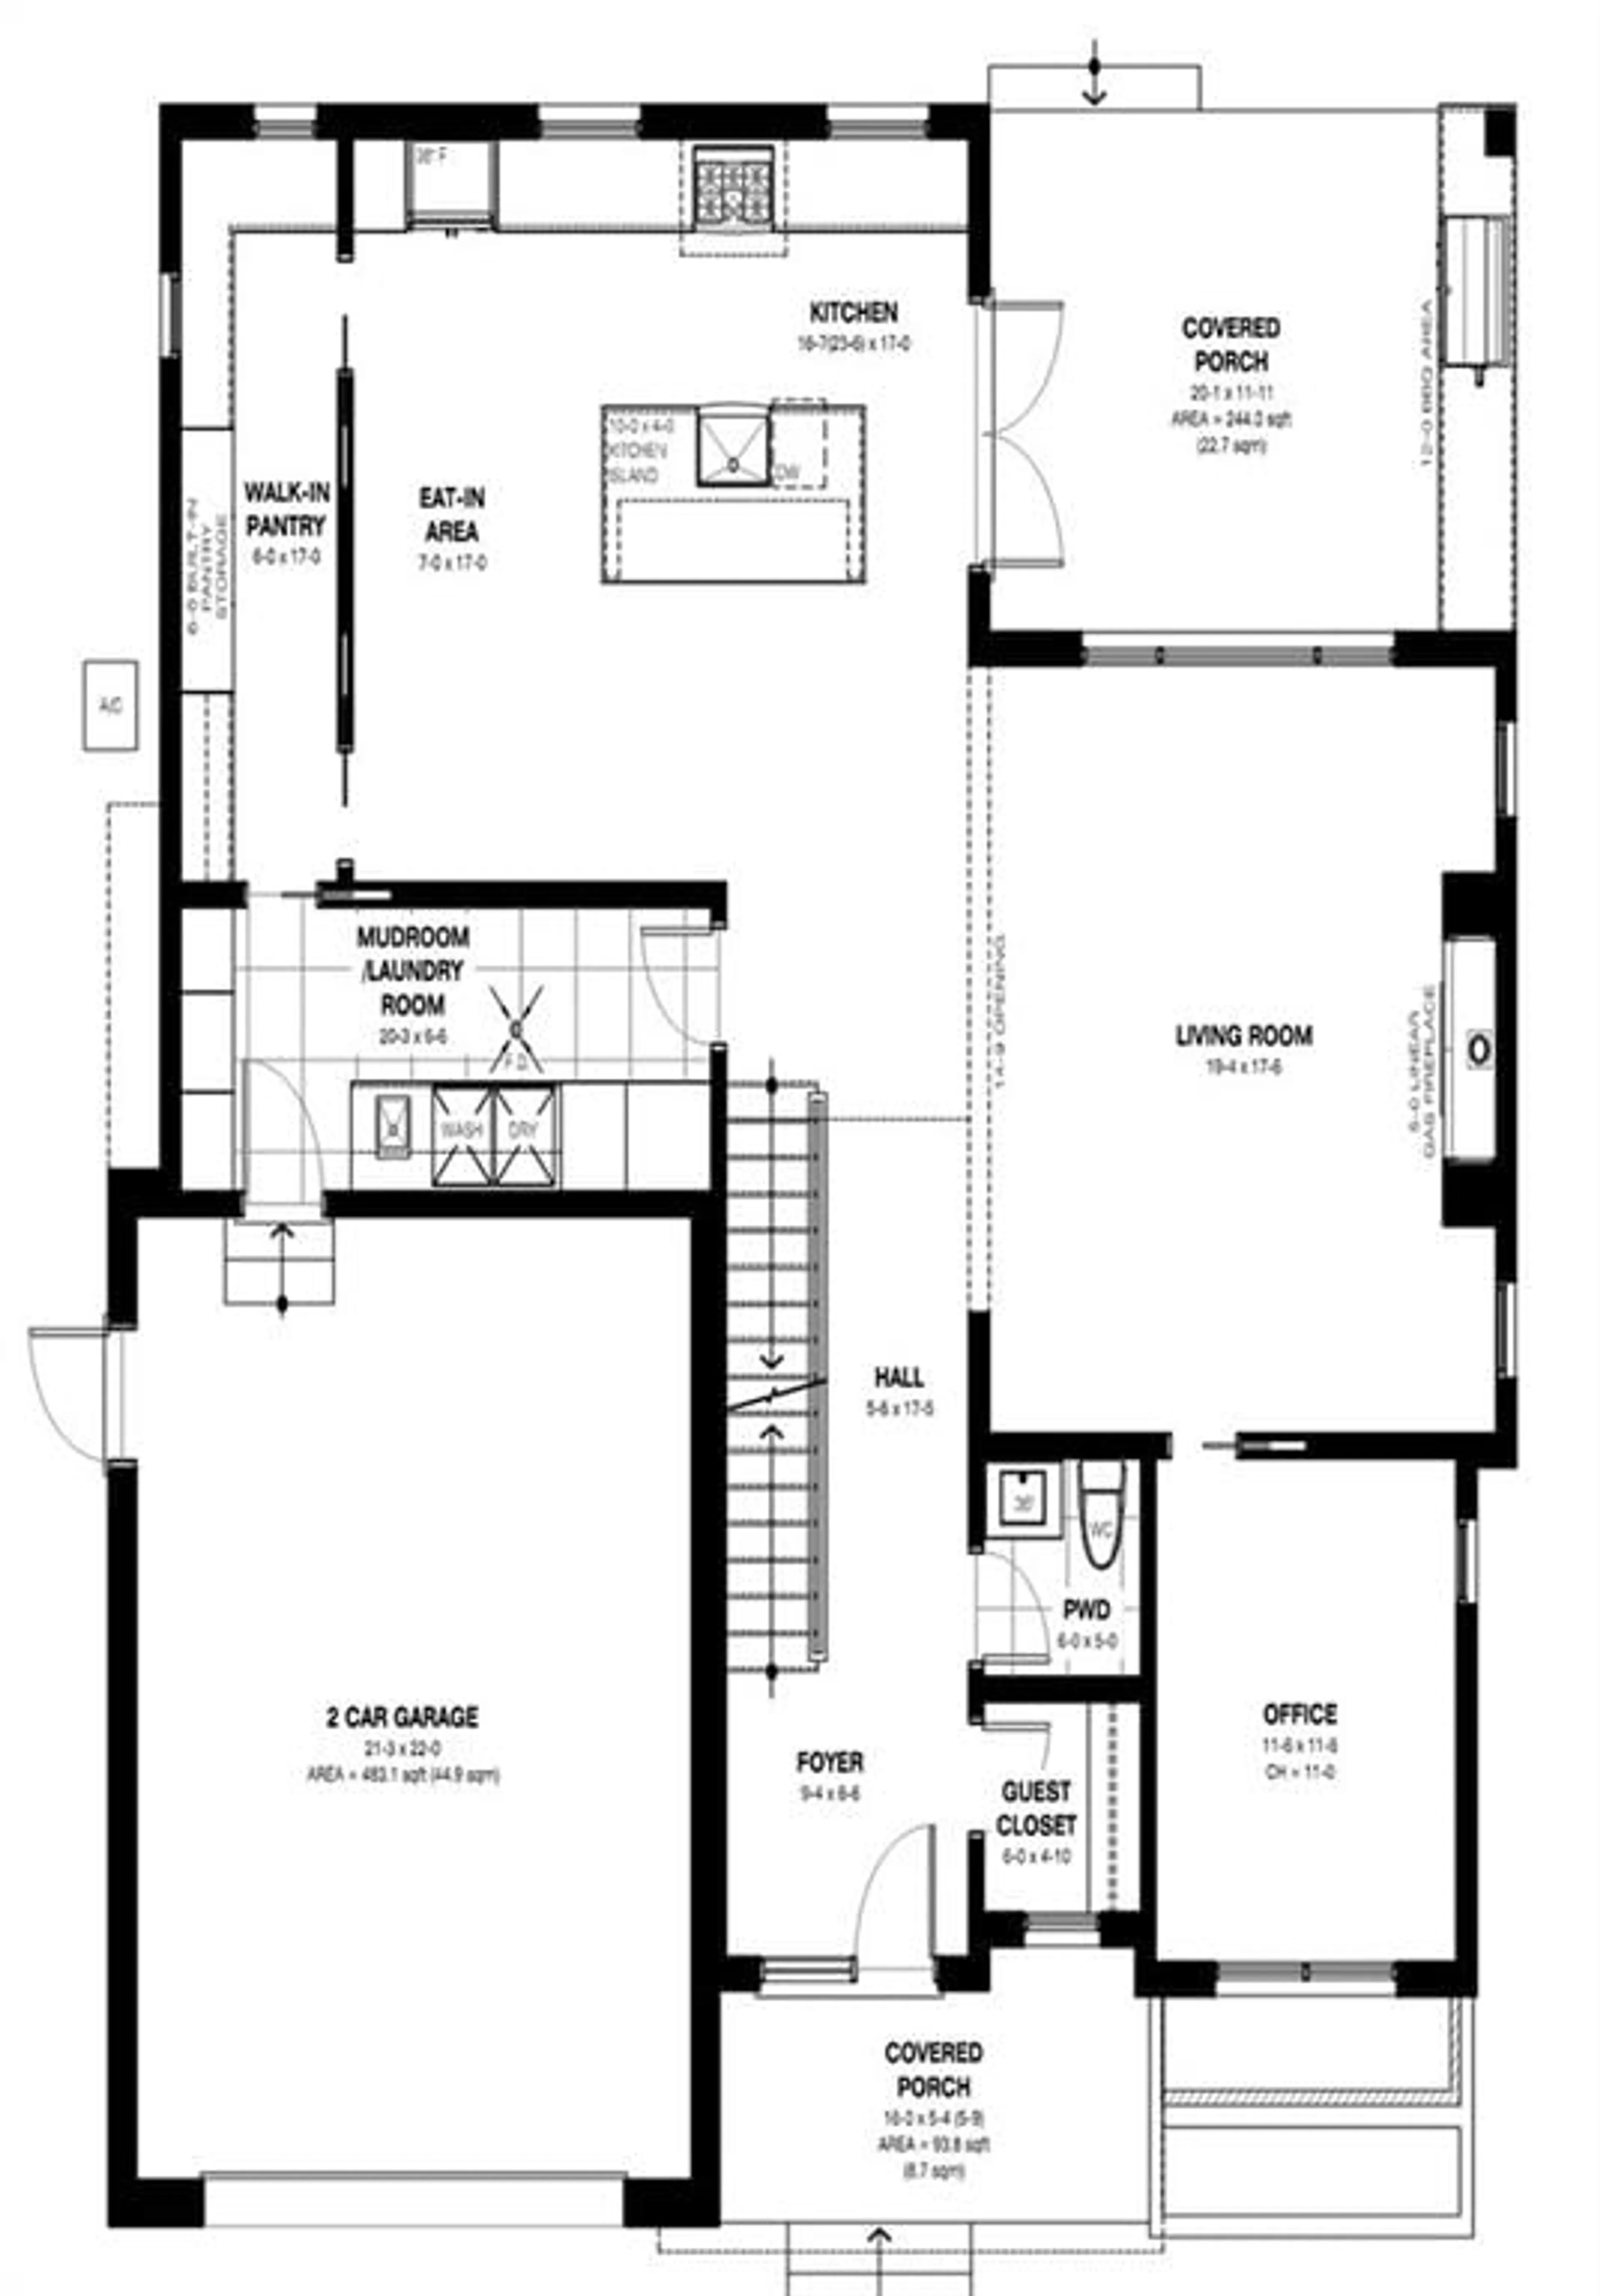 Floor plan for 504 WINONA Rd, Stoney Creek Ontario L8E 5E5